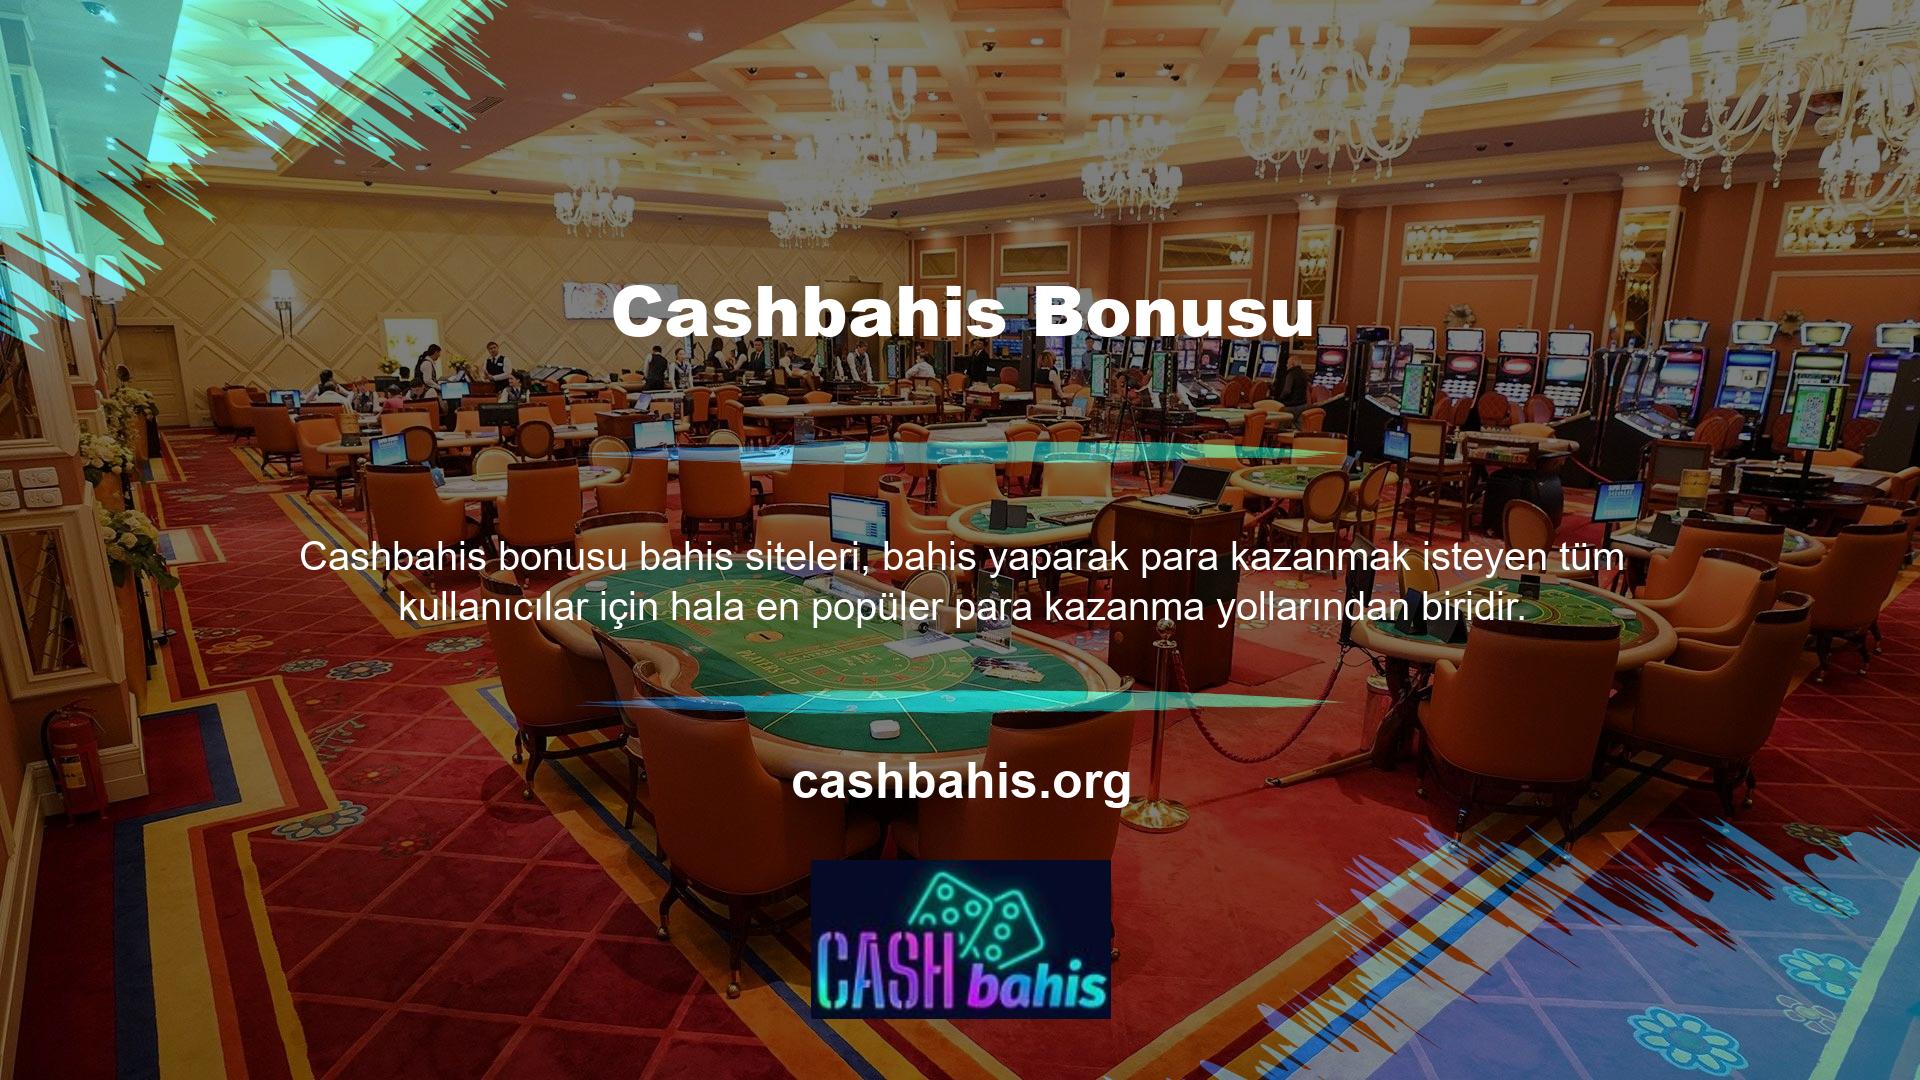 Cashbahis web sitesinin hala yasa dışı olduğu bilinmesine rağmen, uluslararası ve yerel destek aldı